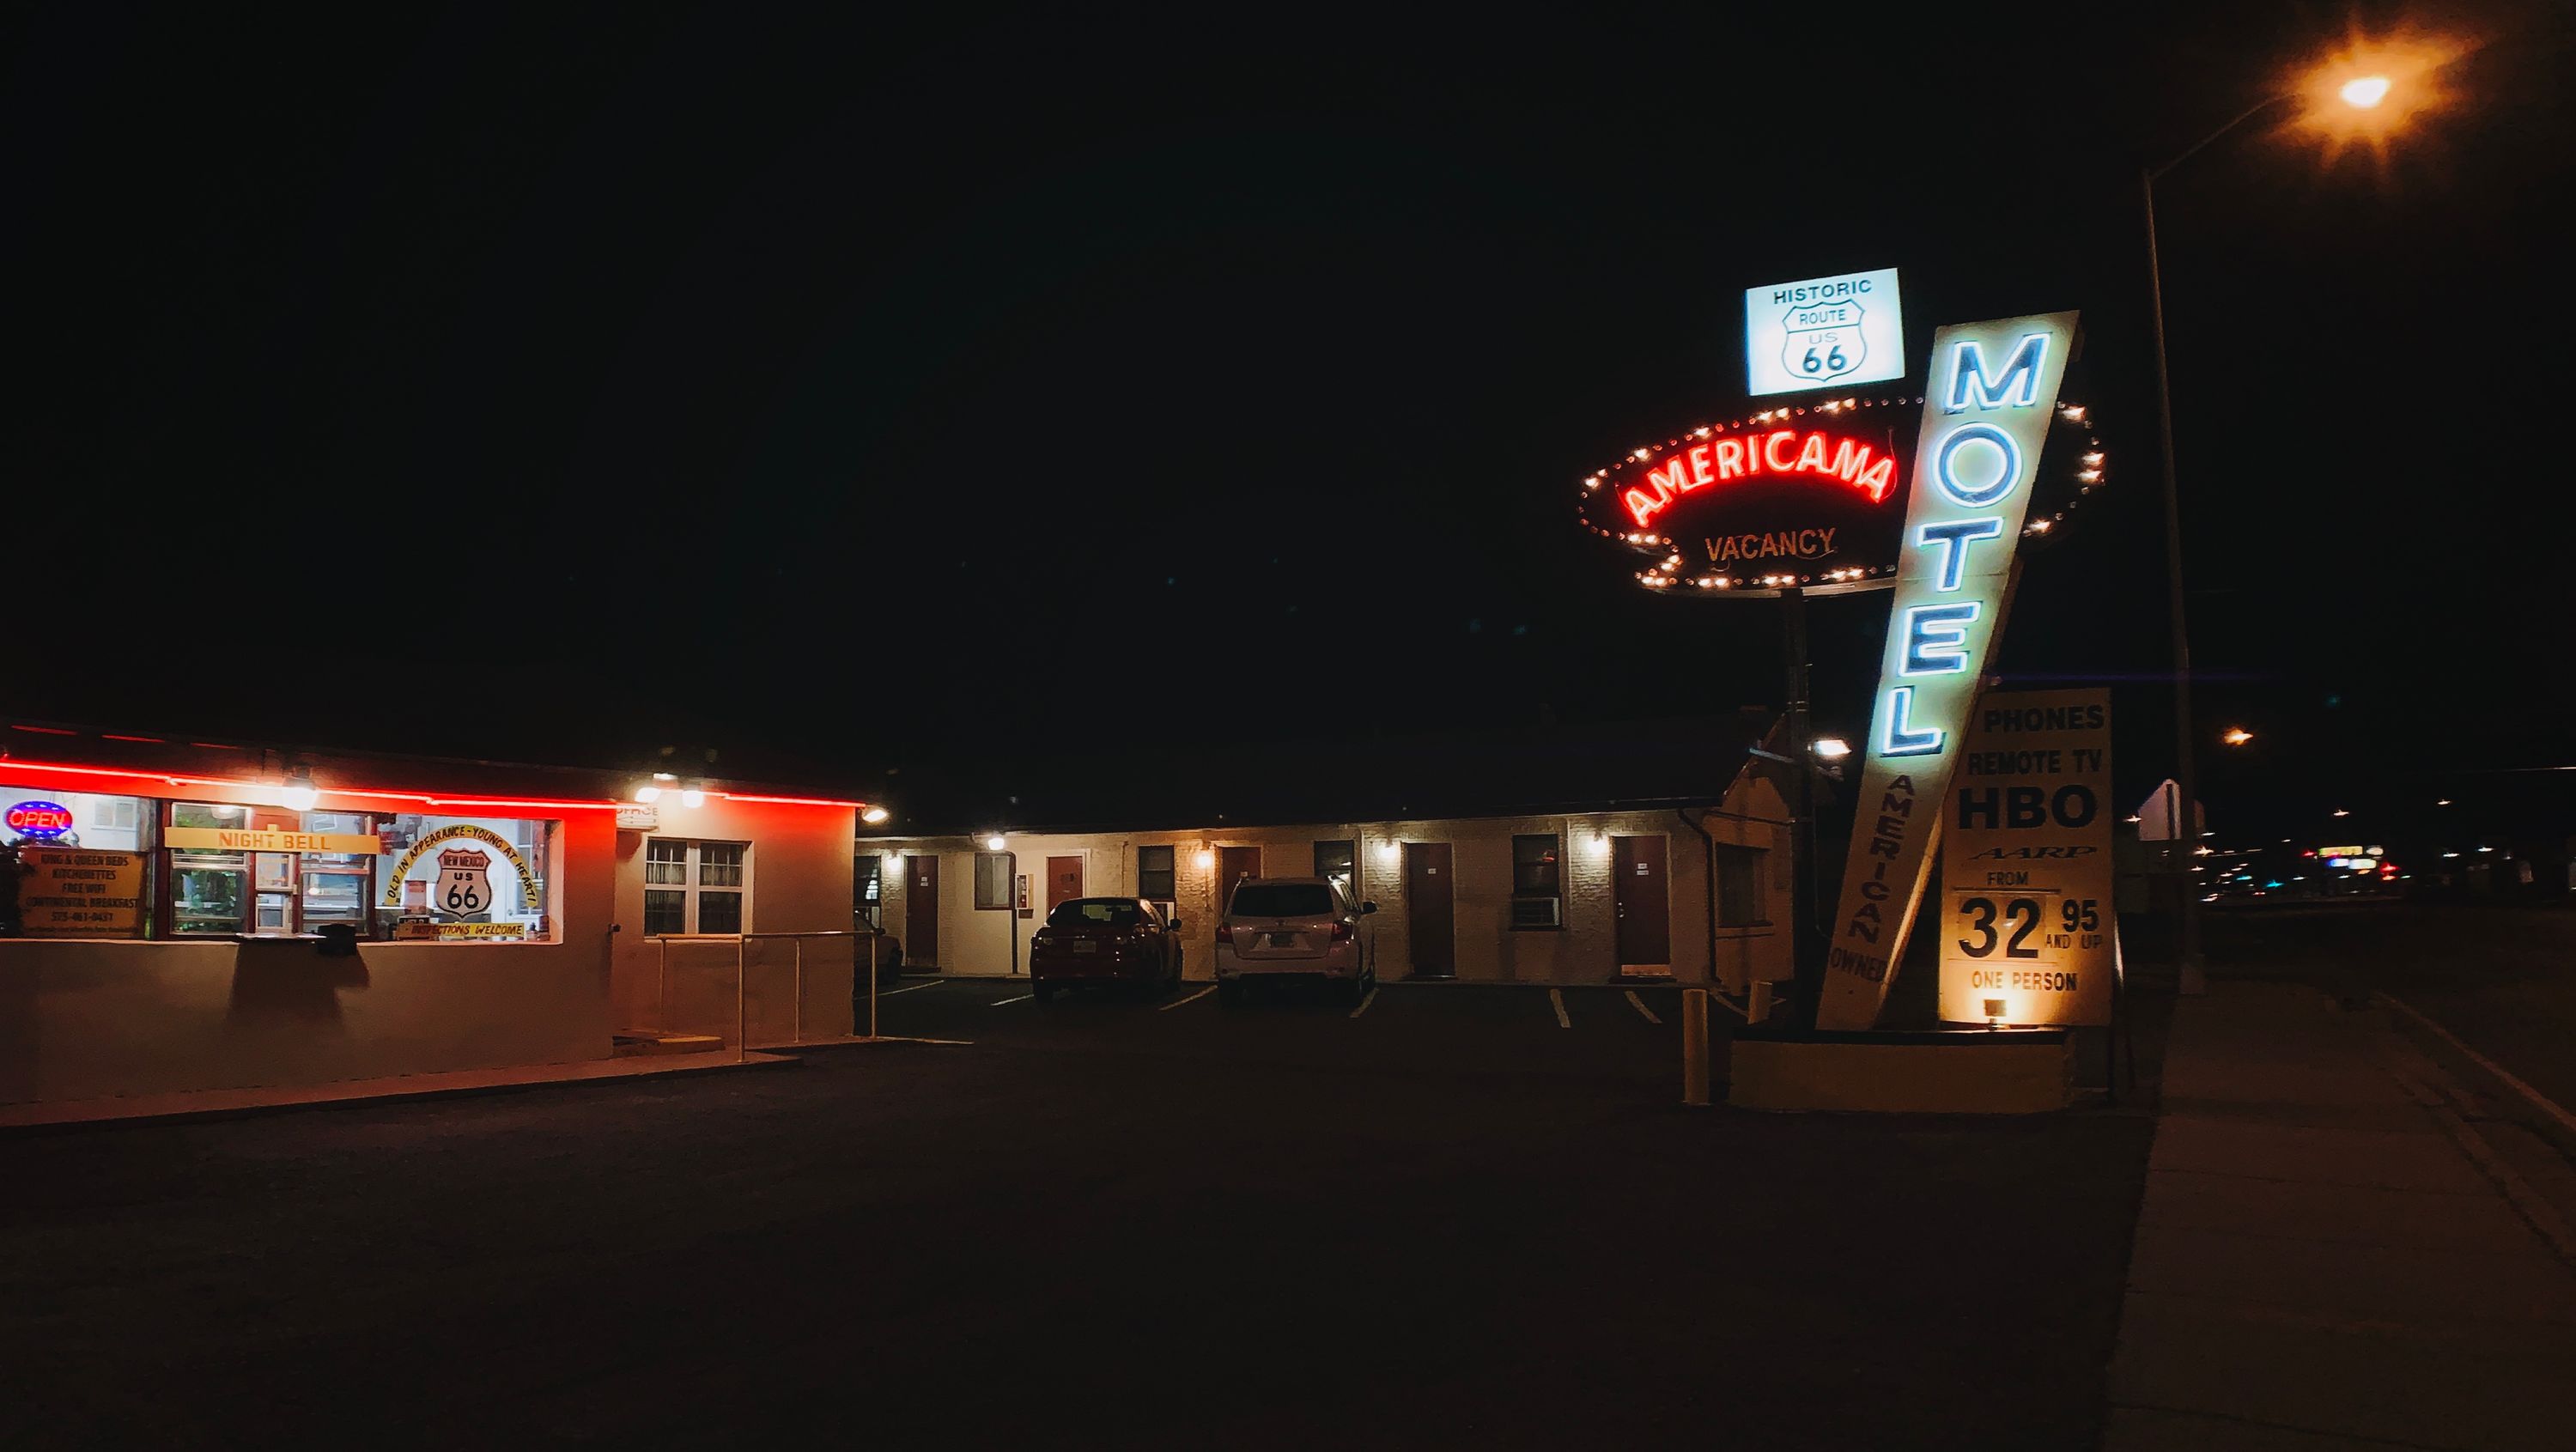 Americana Motel in Tucumcari, NM